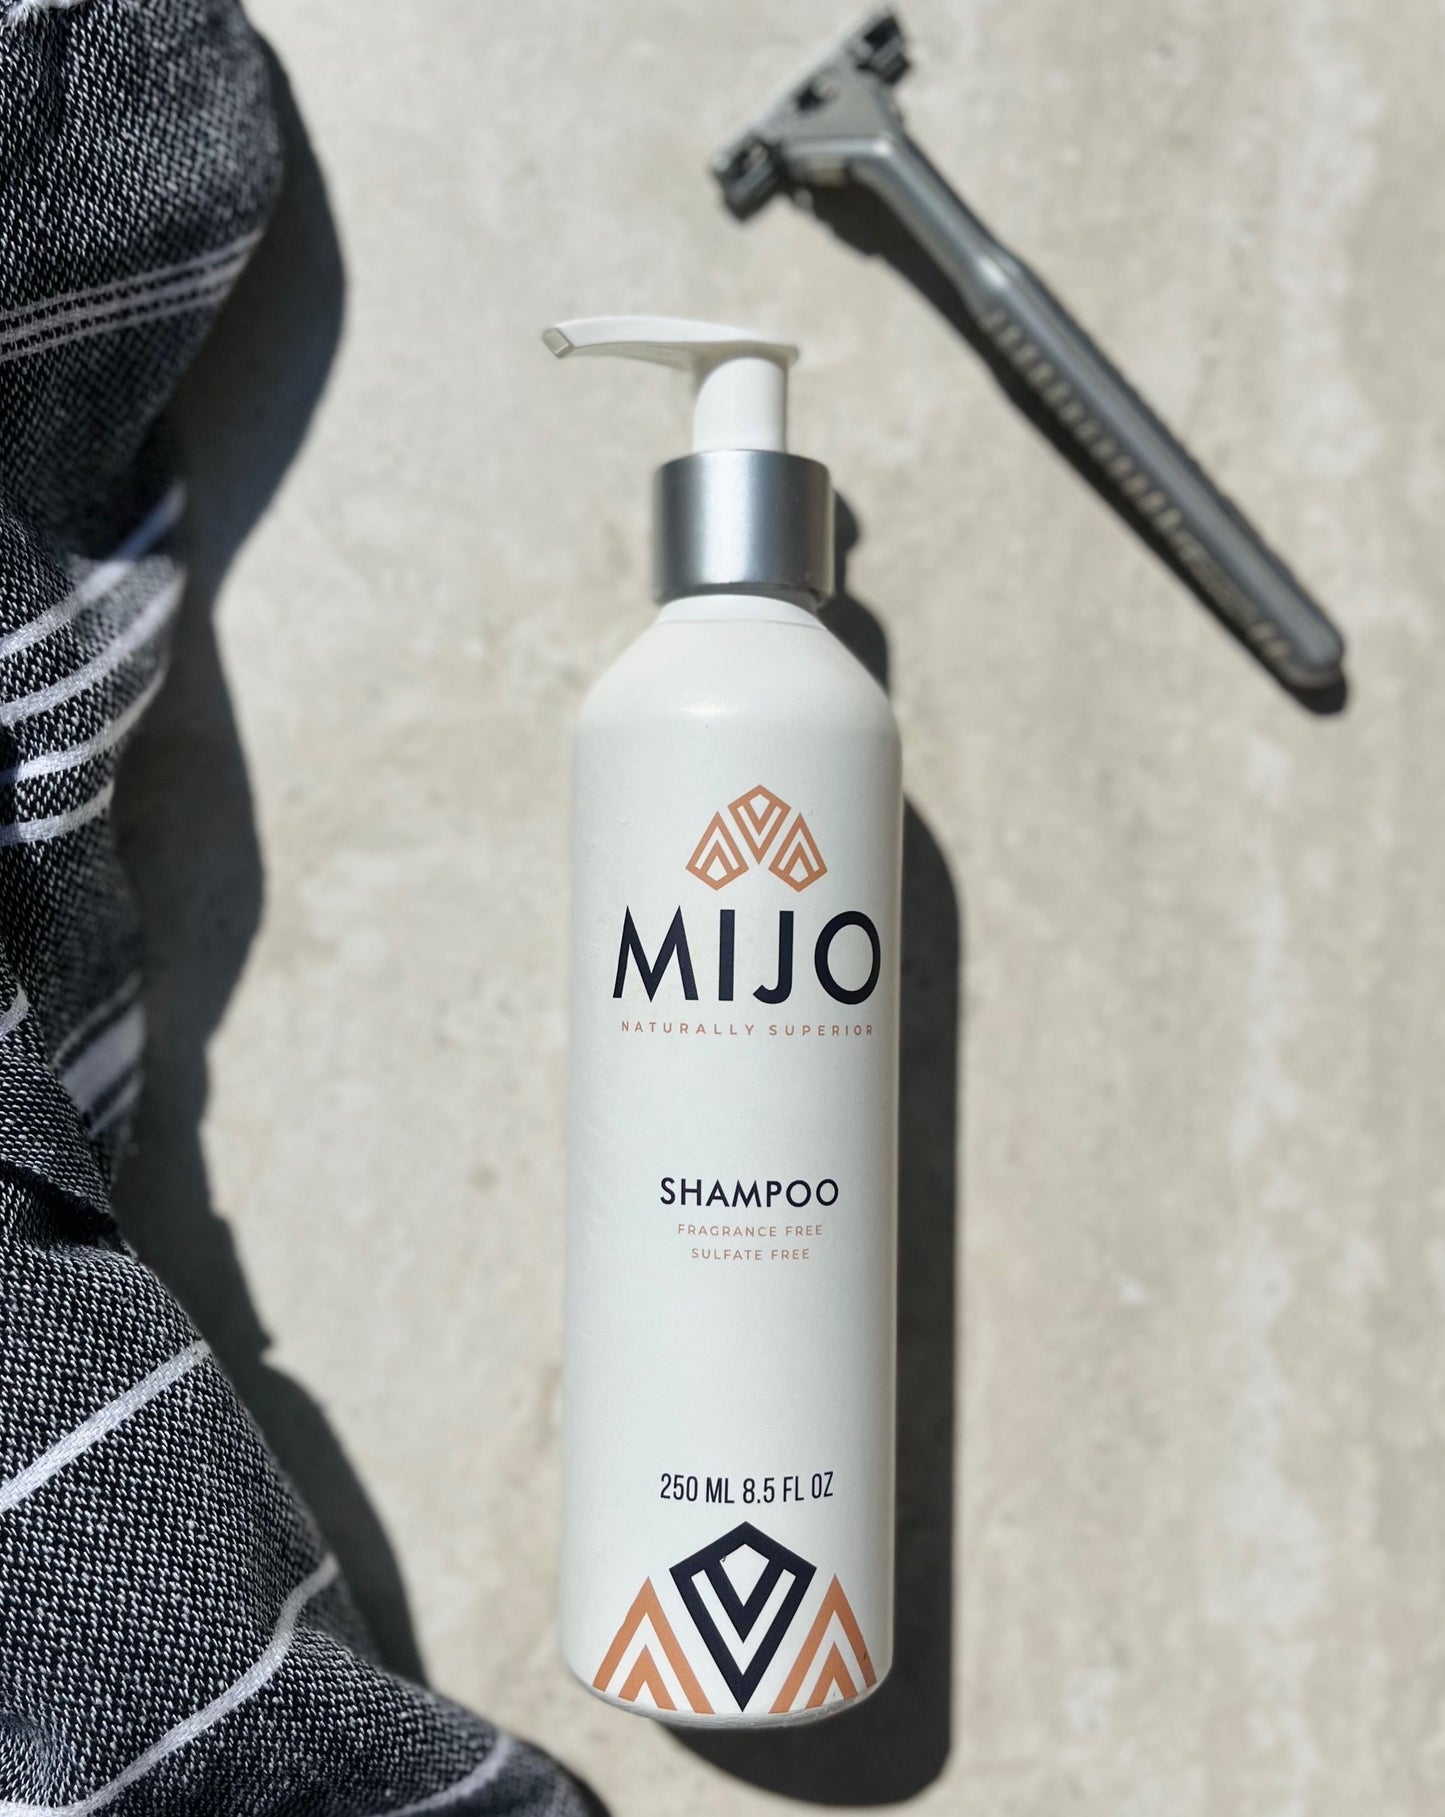 Mijo® Natural Custom Shampoo for Men - Fragrance Free